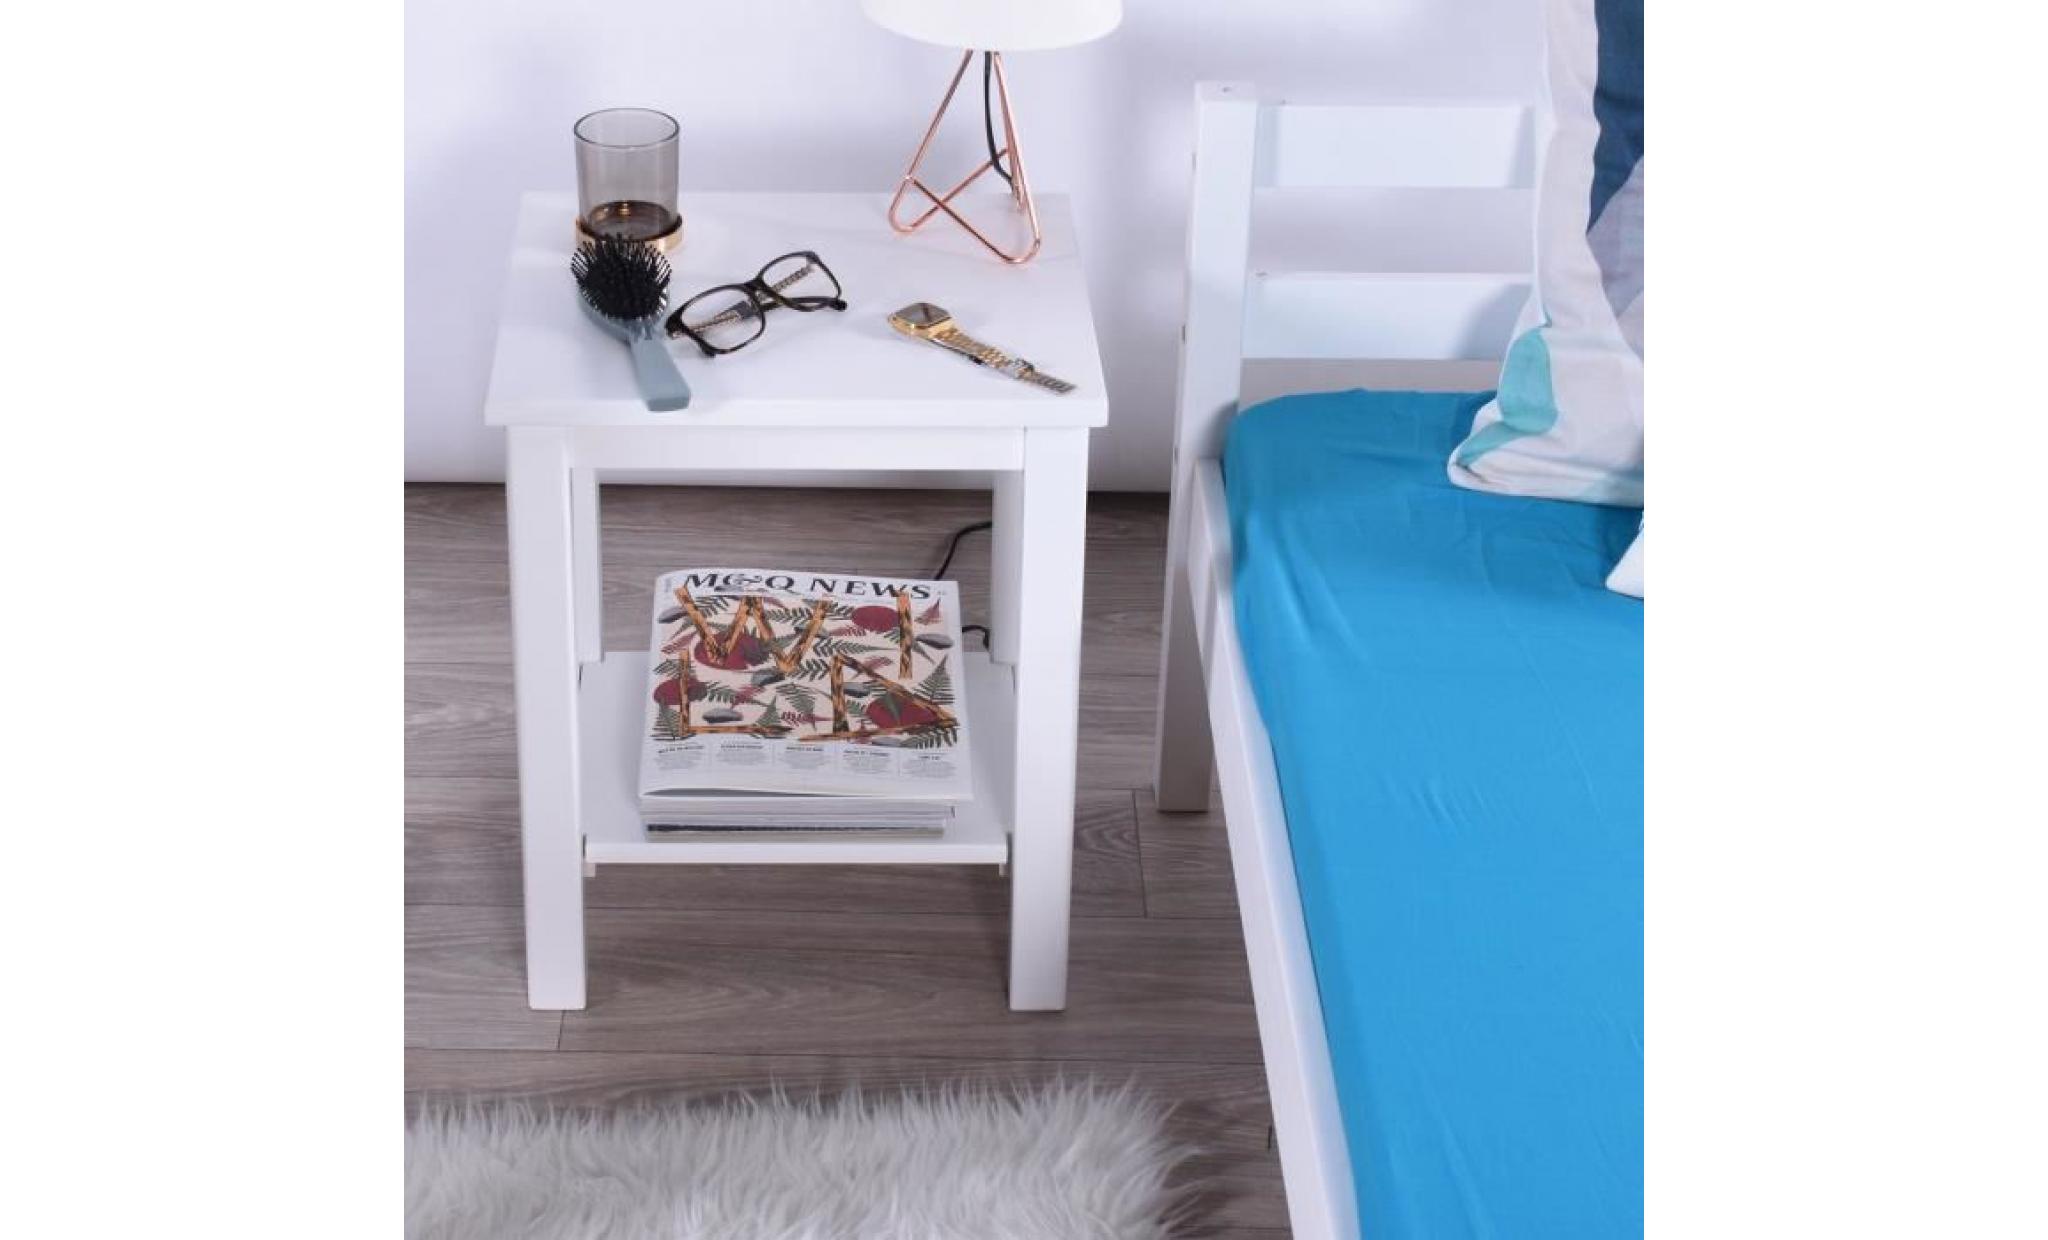 lot de 2 tables de chevet blanc   tables de nuit scandinaves  en bois   homy casa   avec rangement   38 x 31.5 x 47.3 cm pas cher